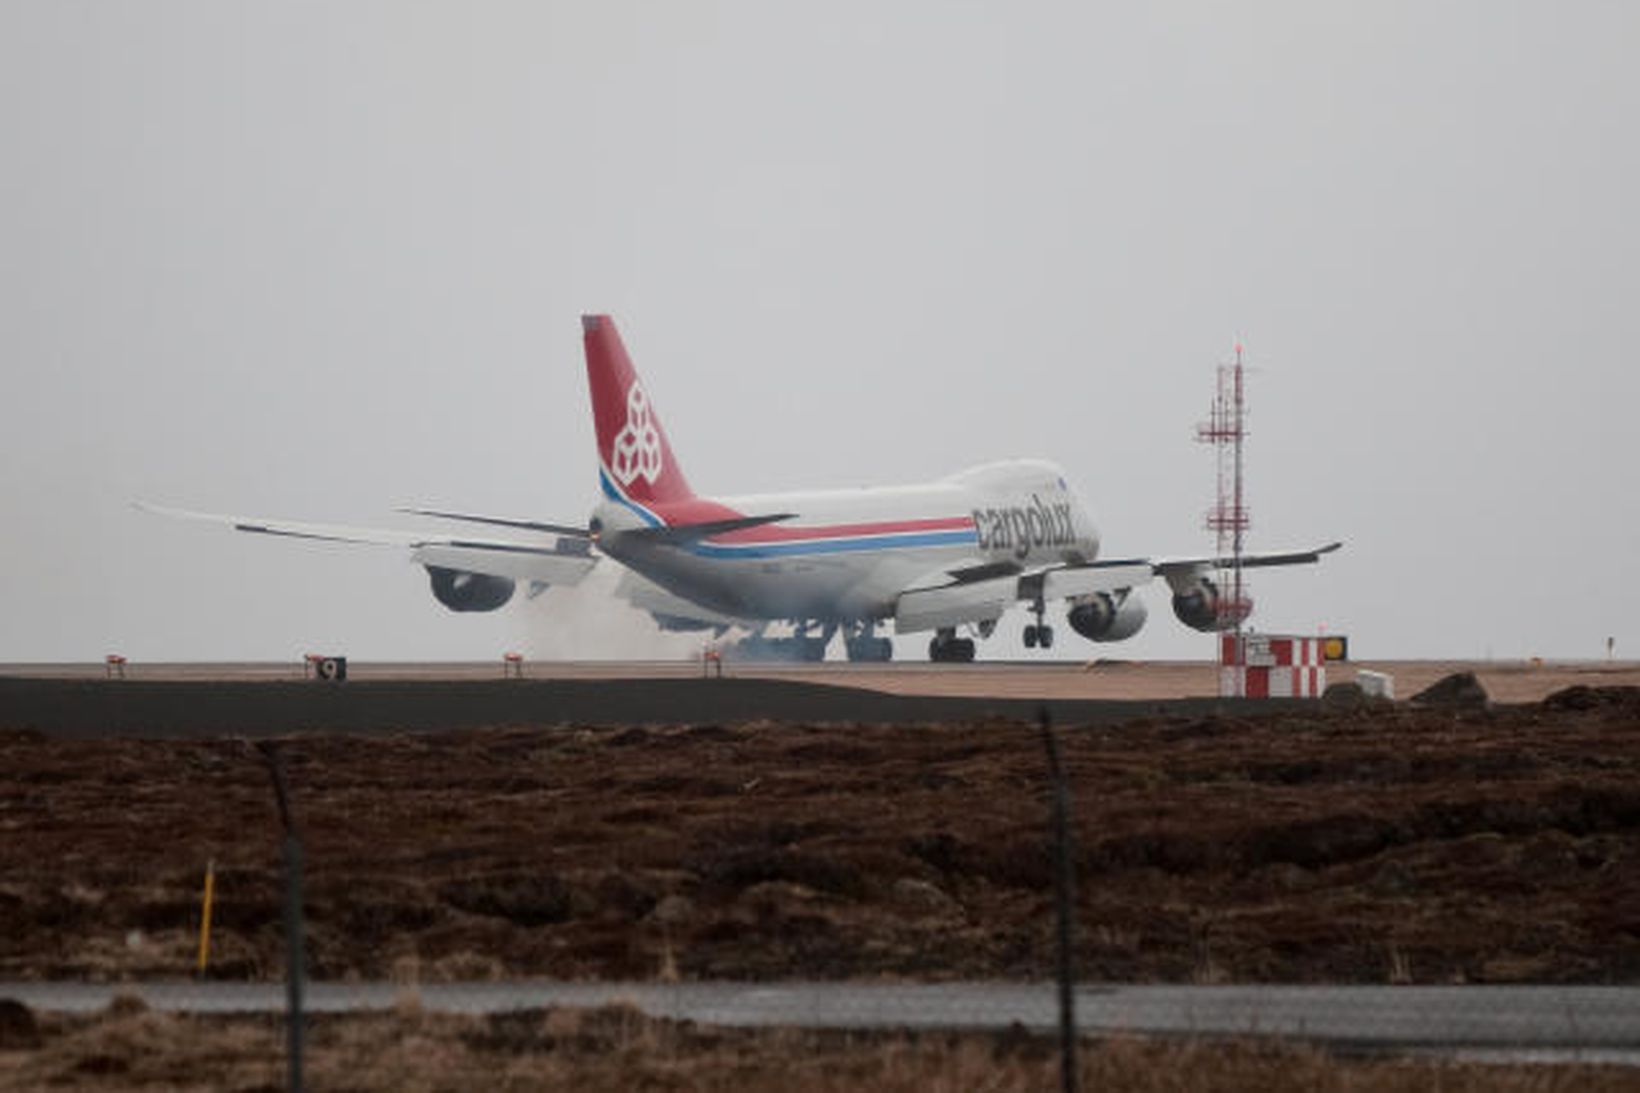 Stærsta flugvél Boeing er við lendingaræfingar í Keflavík.